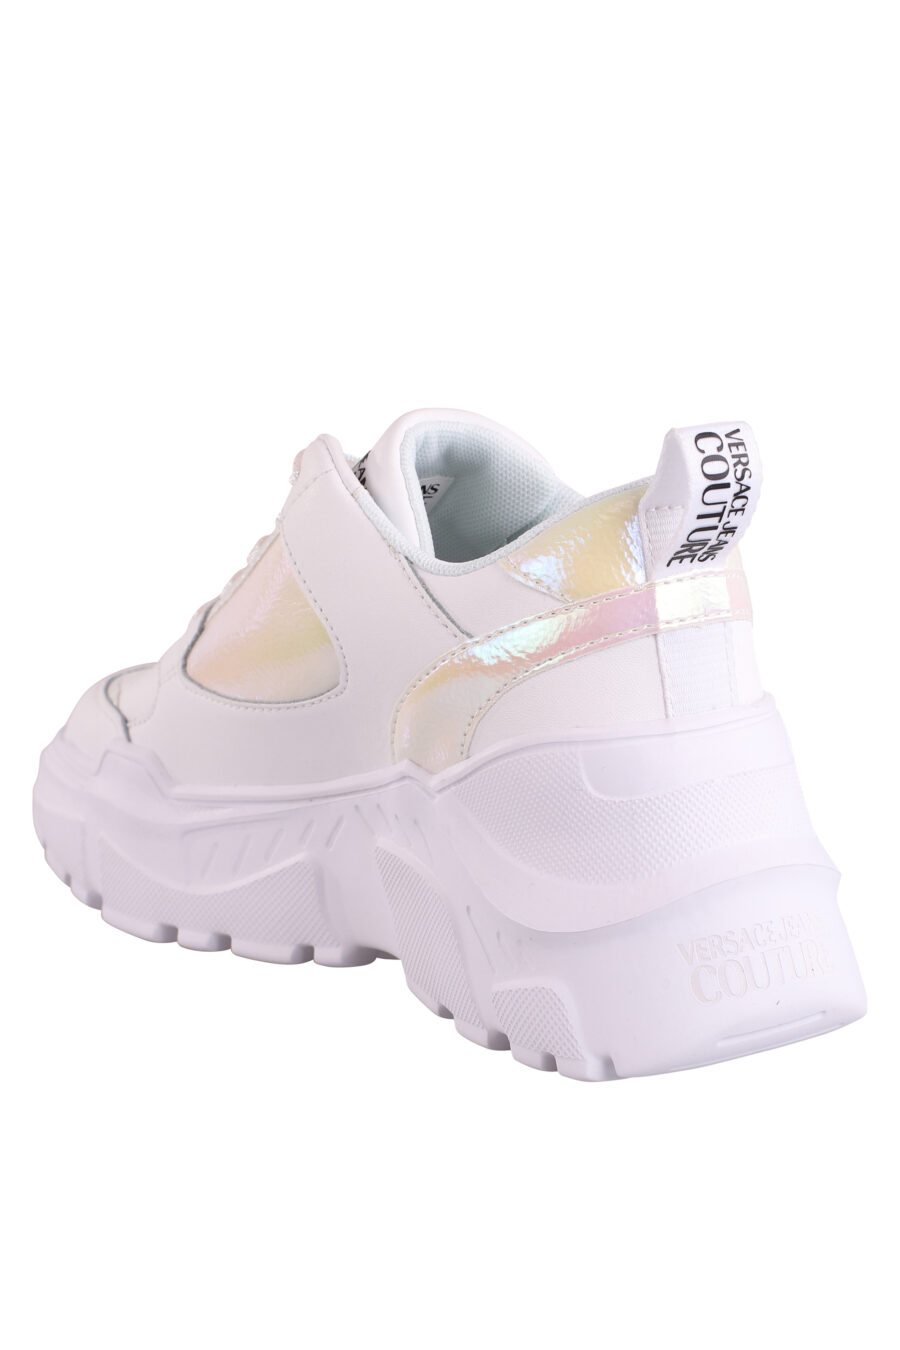 Zapatillas blancas con detalles en holograma y plataforma - IMG 9013